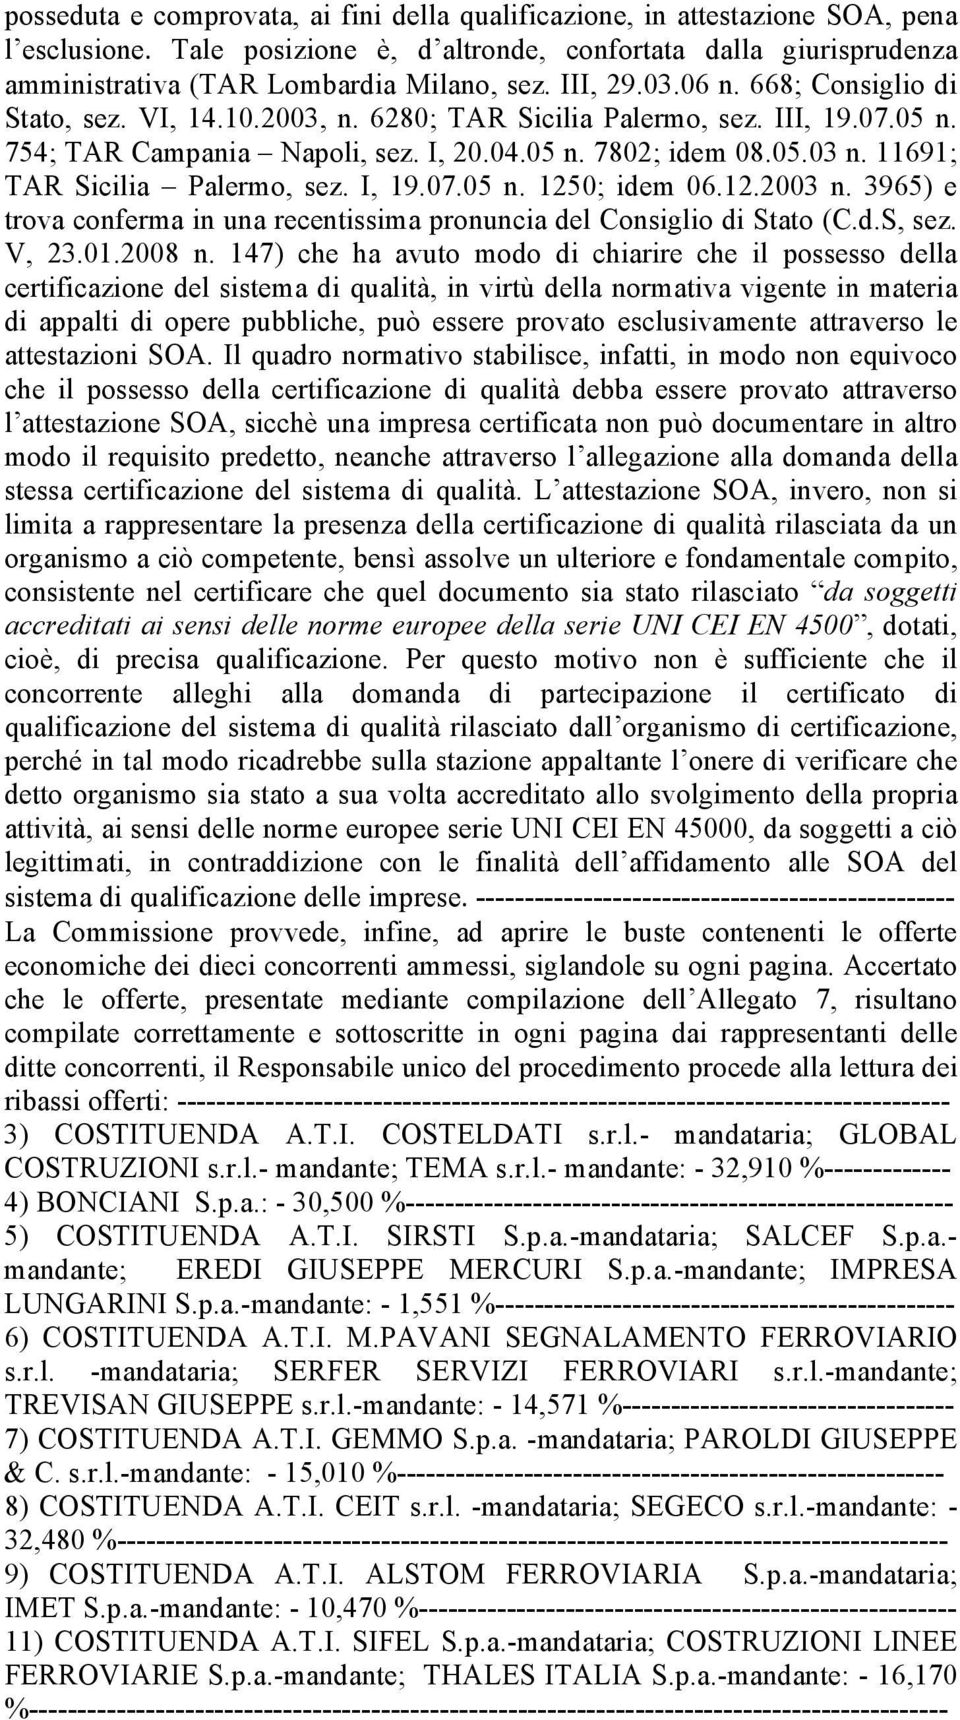 11691; TAR Sicilia Palermo, sez. I, 19.07.05 n. 1250; idem 06.12.2003 n. 3965) e trova conferma in una recentissima pronuncia del Consiglio di Stato (C.d.S, sez. V, 23.01.2008 n.